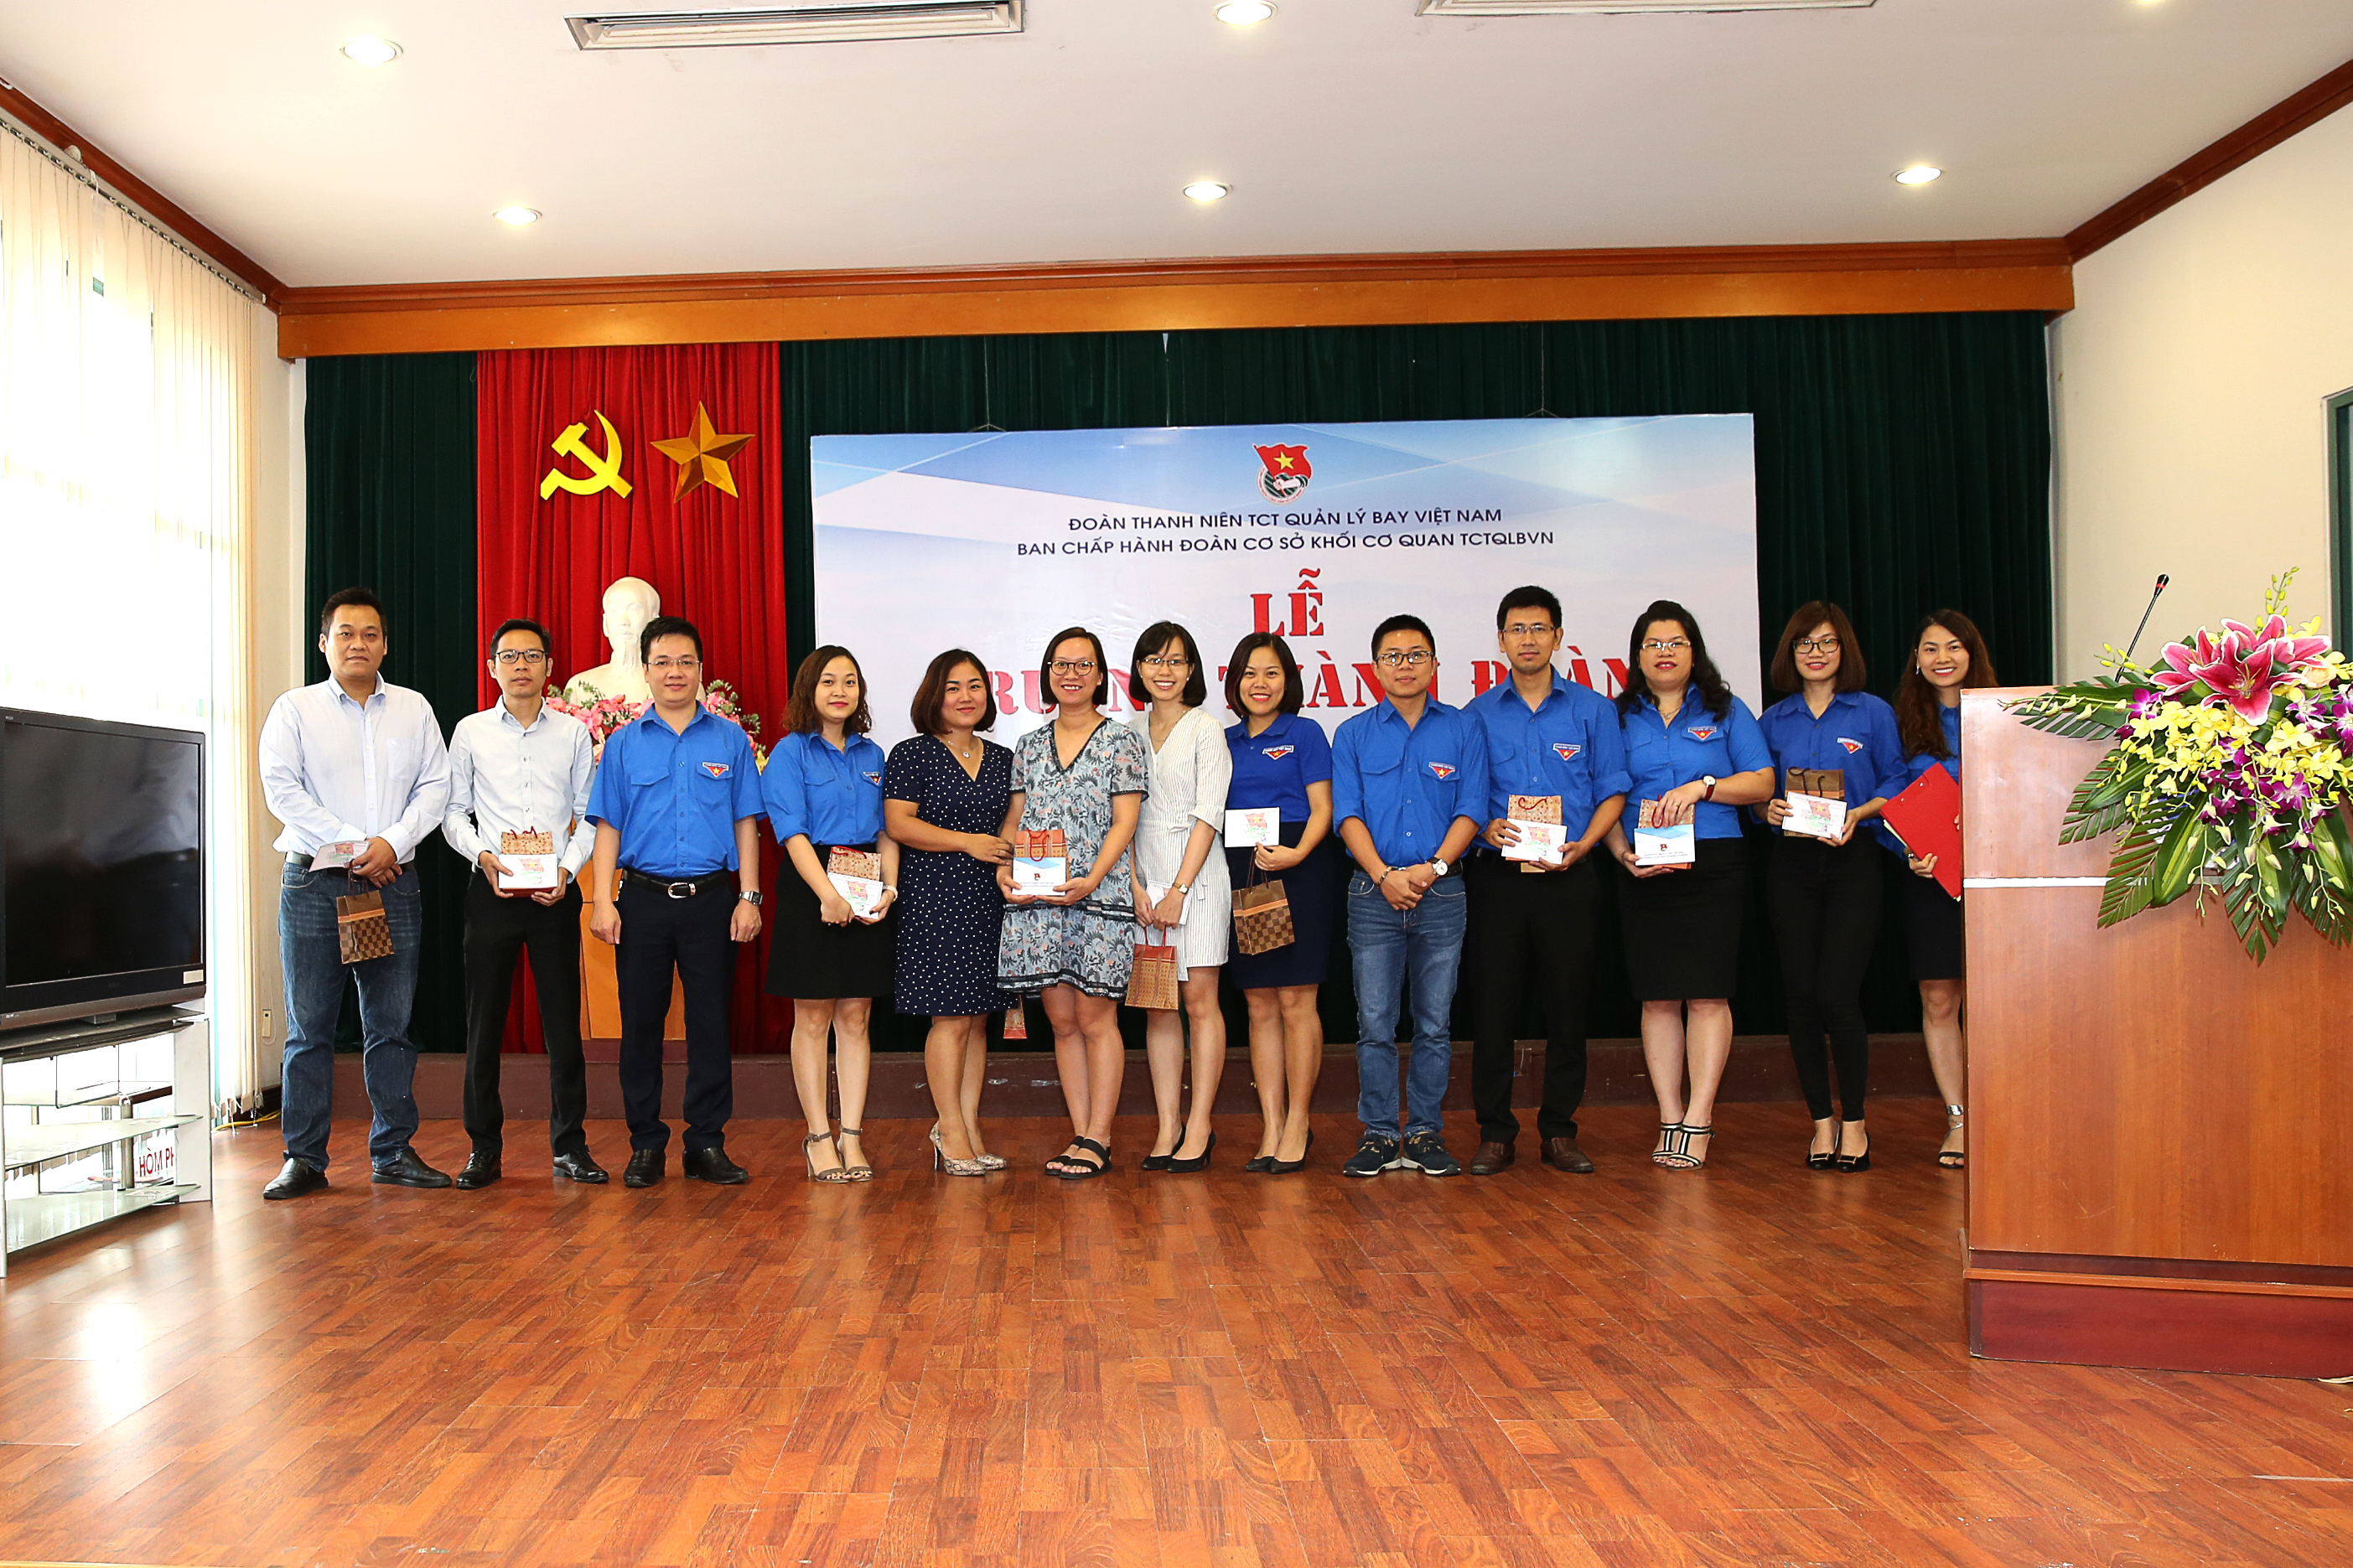 Lễ Trưởng thành Đoàn của các đoàn viên các Chi đoàn thuộc Khối cơ quan Tổng công ty Quản lý bay Việt Nam